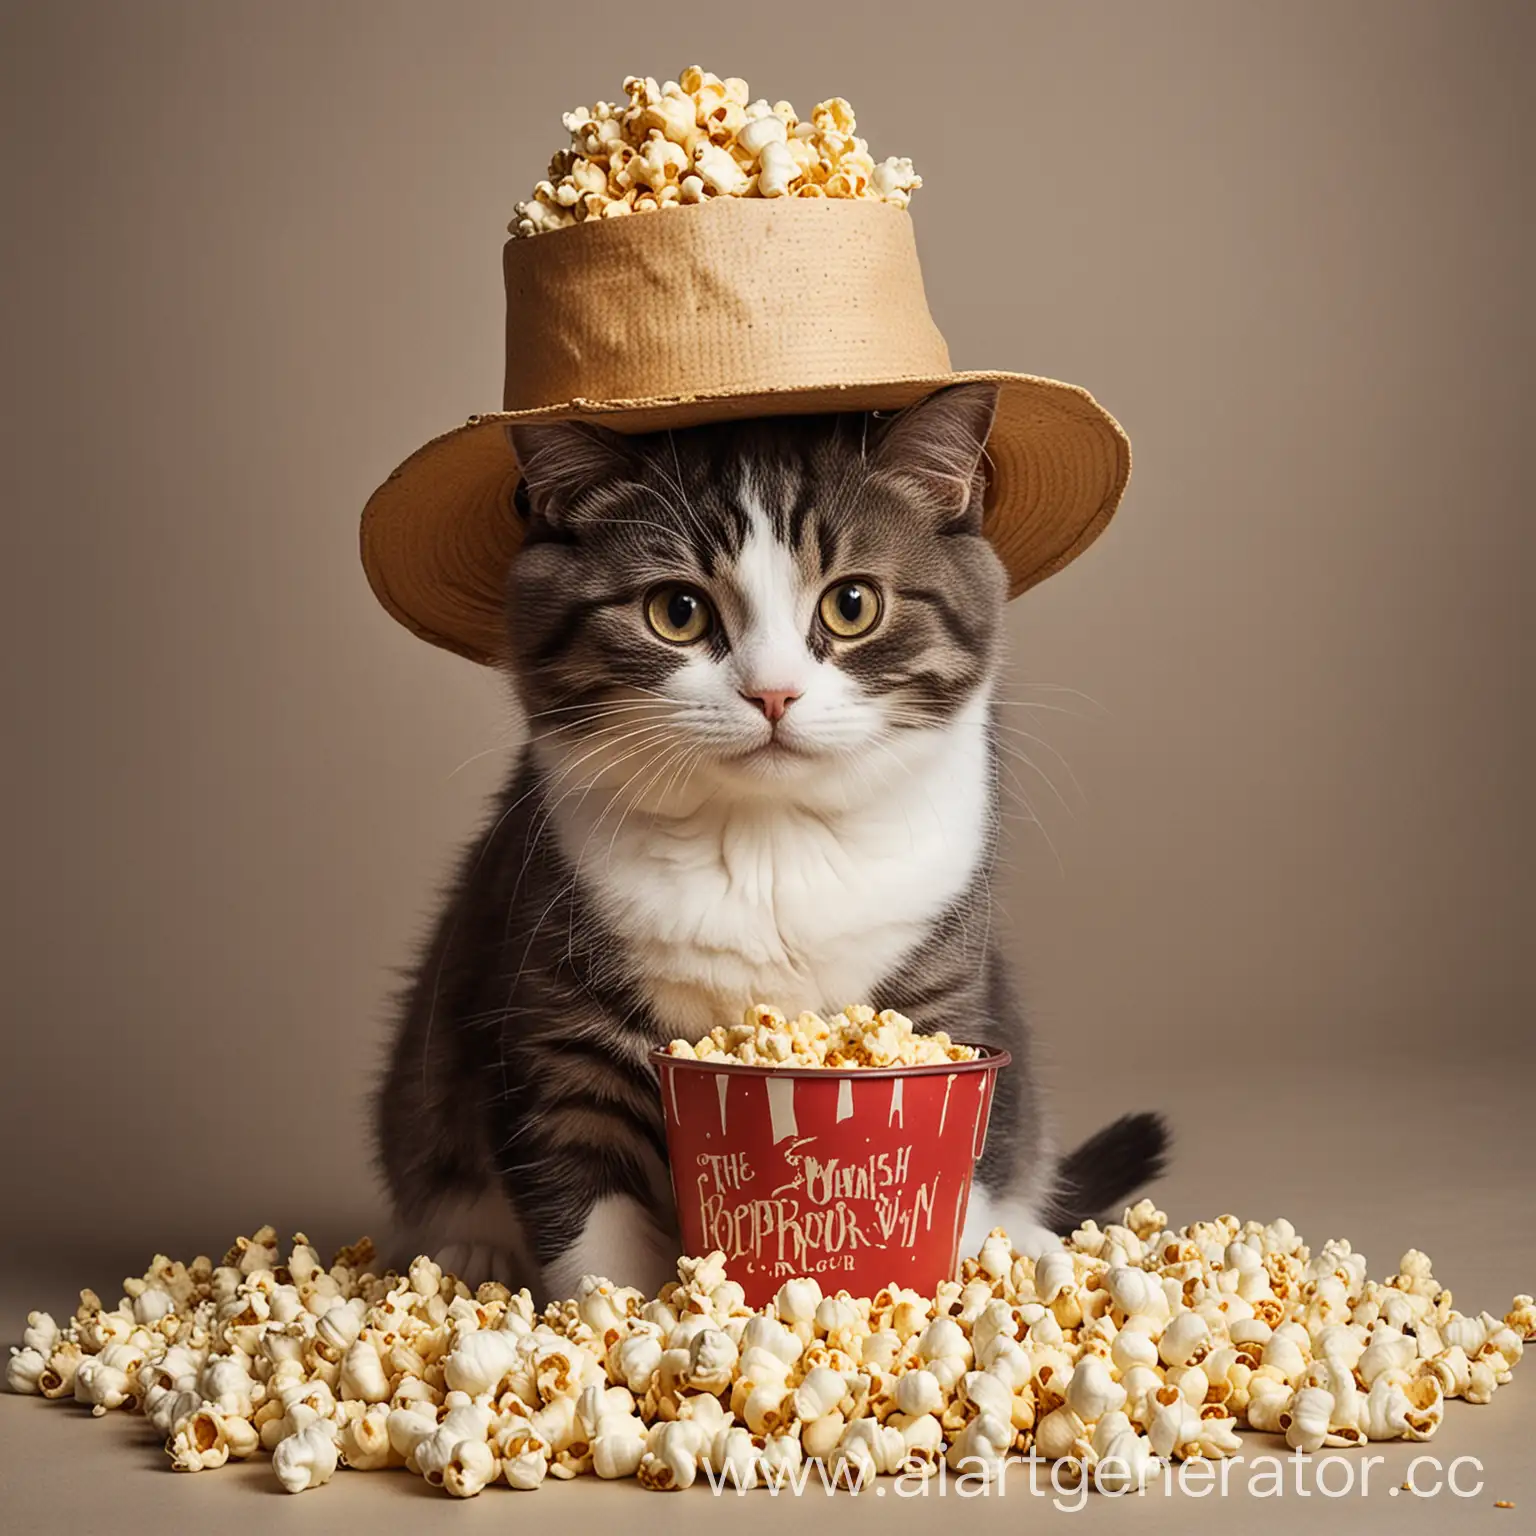 Кот в шляпе, с ведром попкорна, вальяжно сидит.